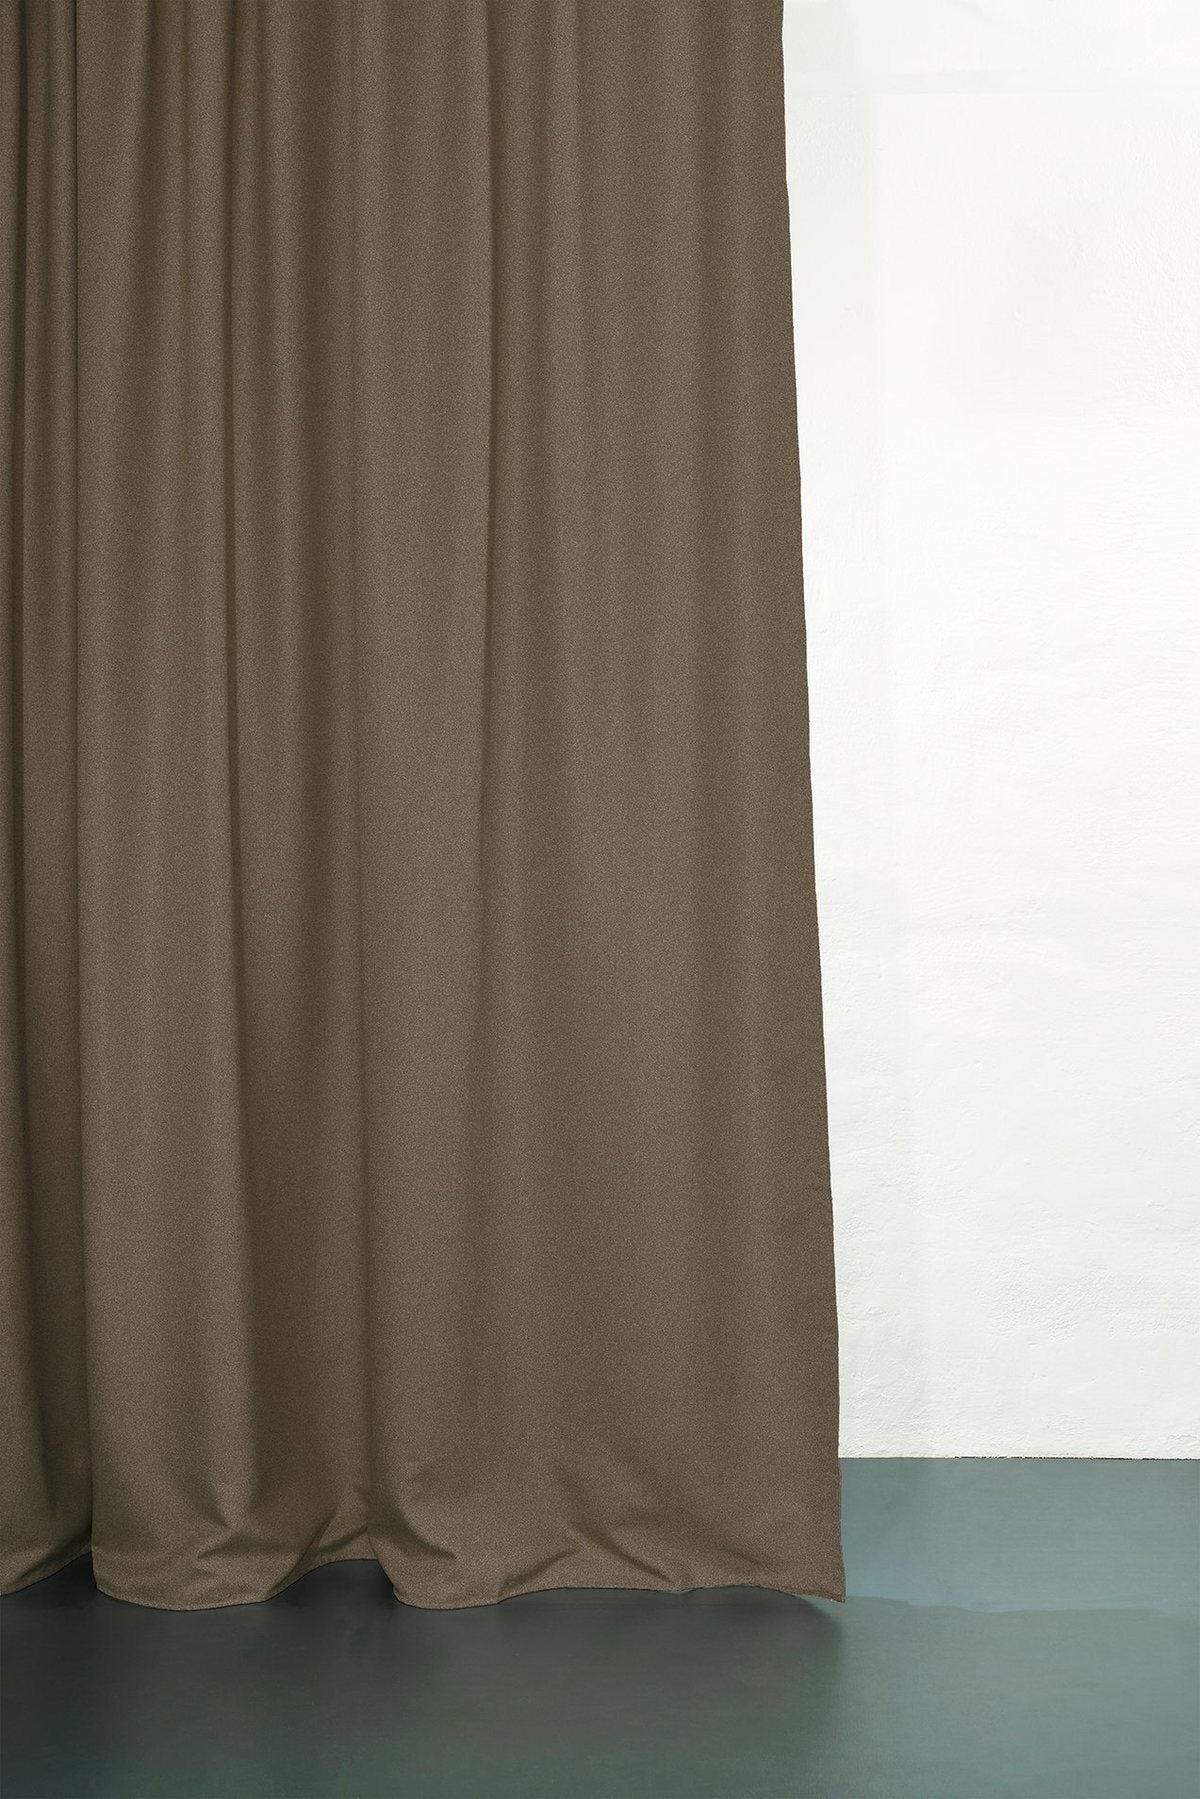 Vorhang Hangover Dimout in Dunkelbraun präsentiert im Onlineshop von KAQTU Design AG. Vorhang ist von ZigZagZurich